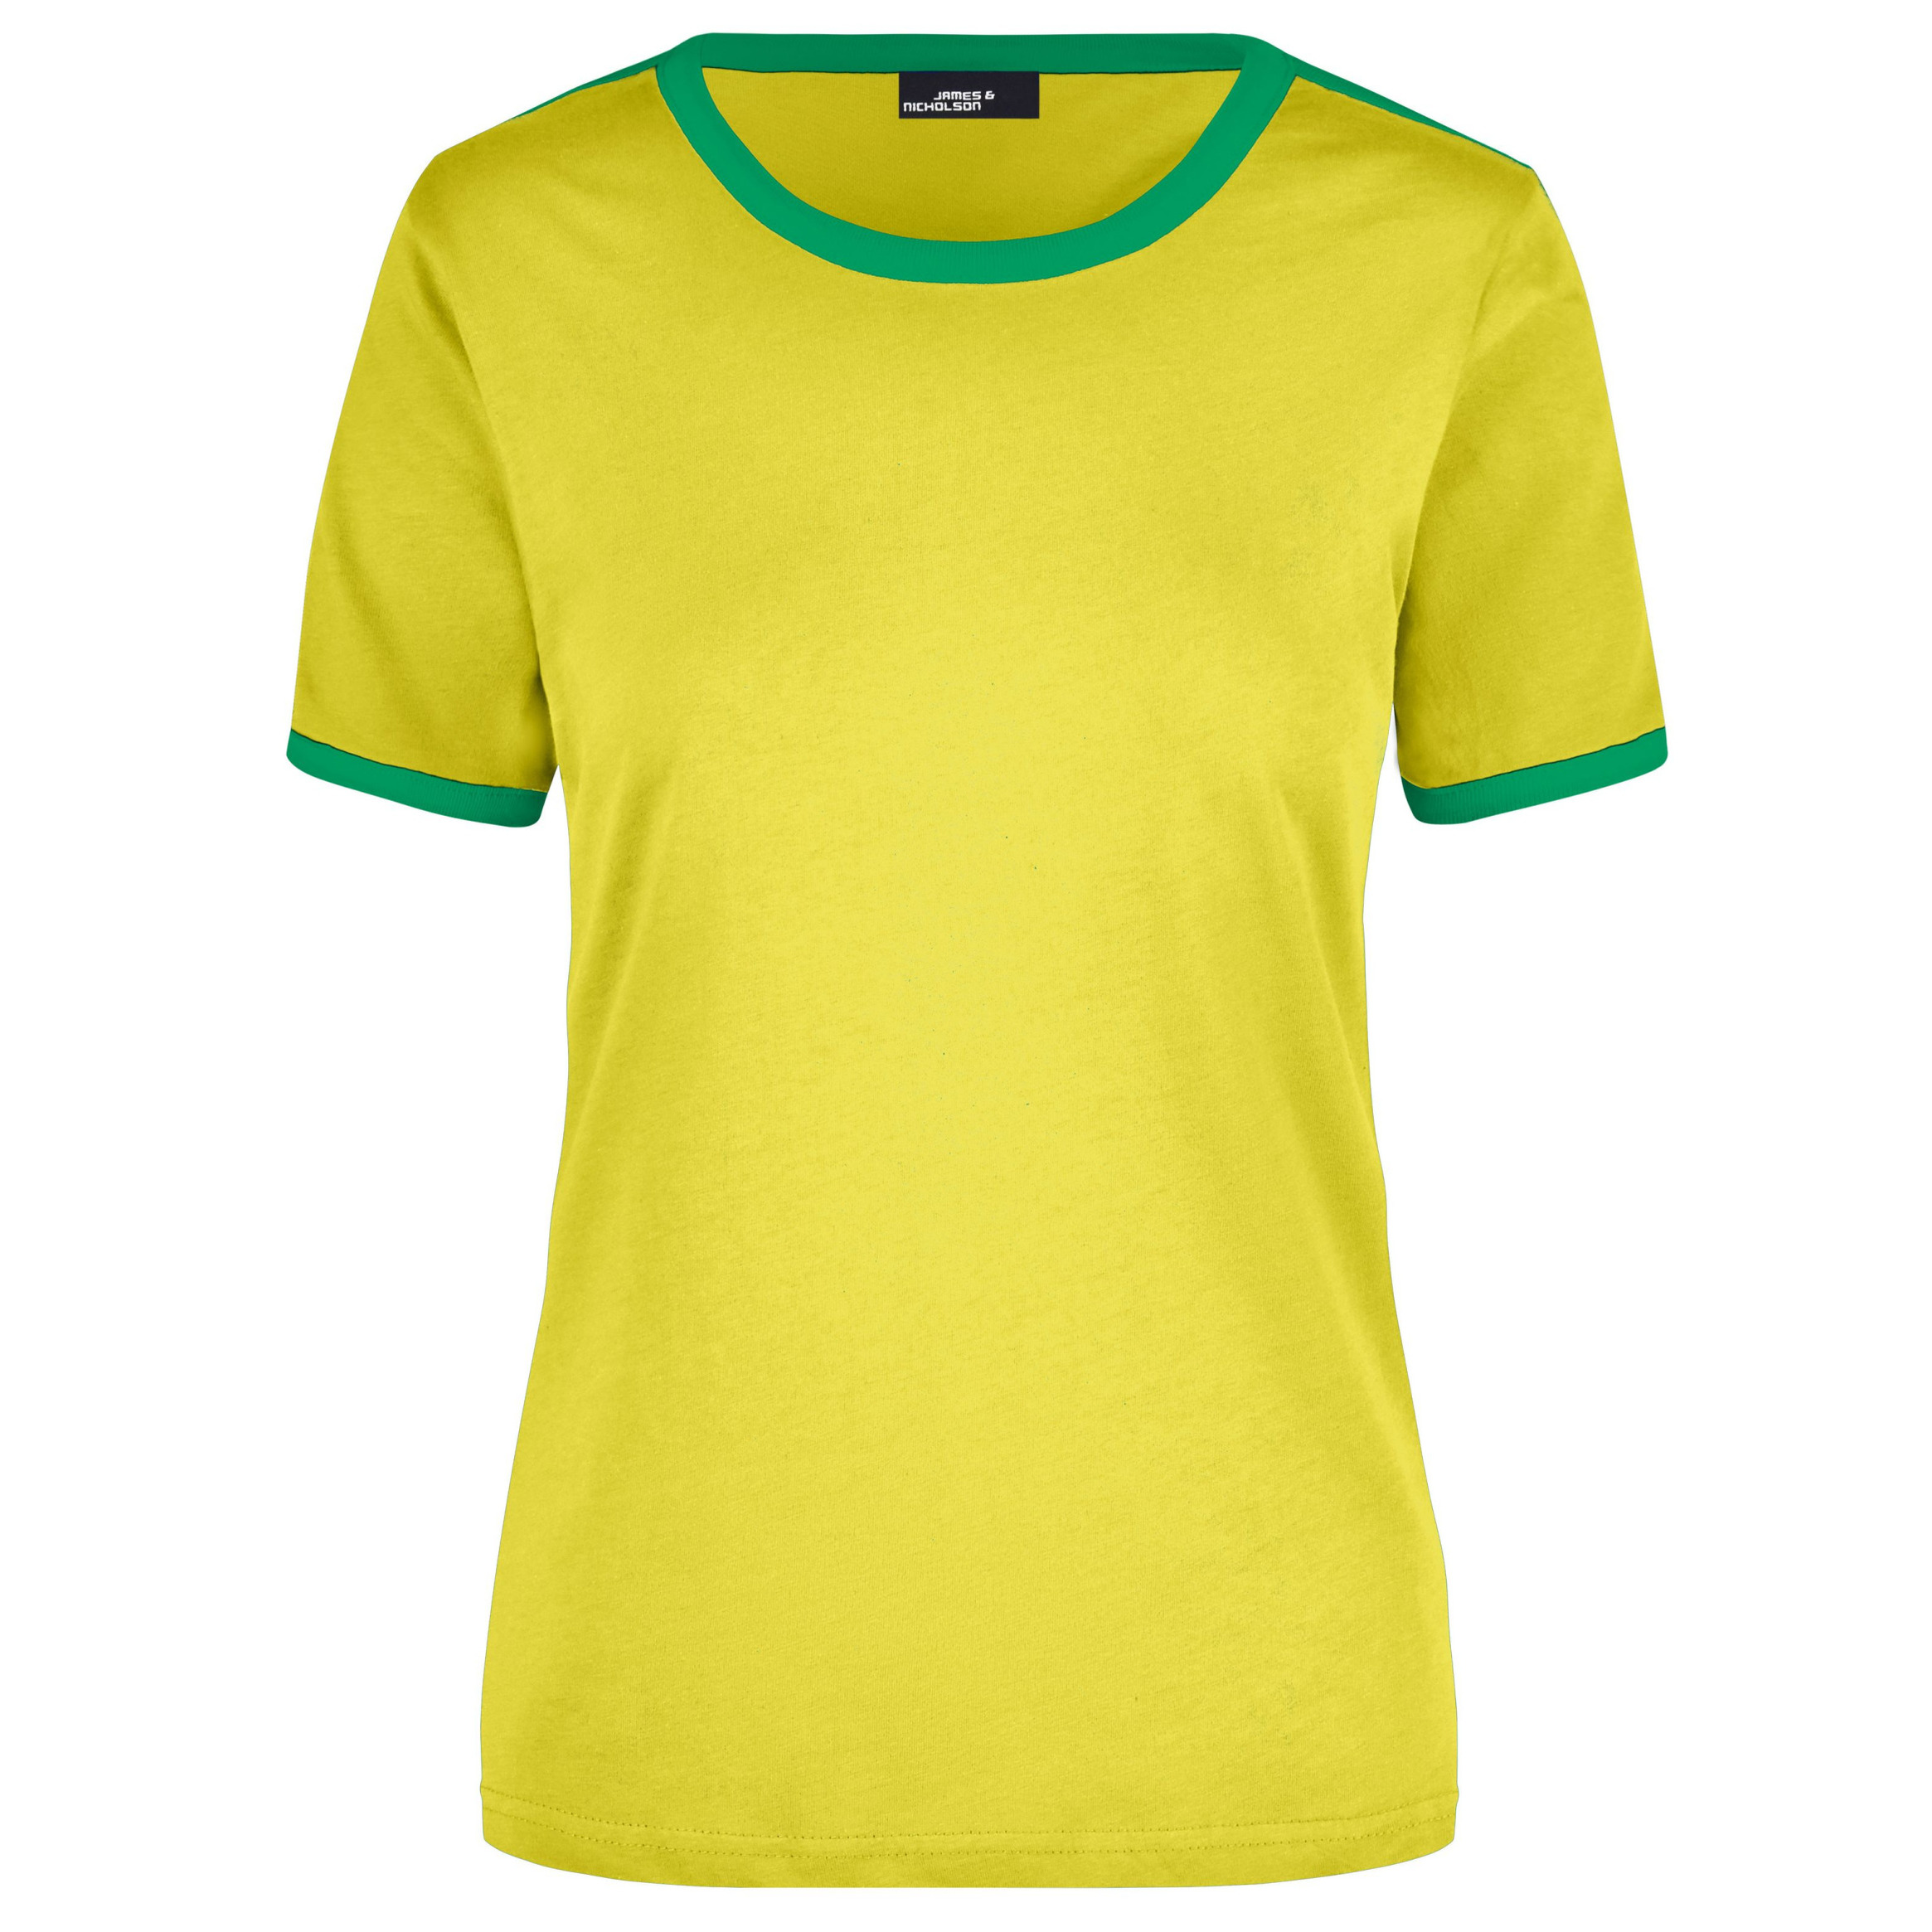 Geel dames t shirt met groene contrast